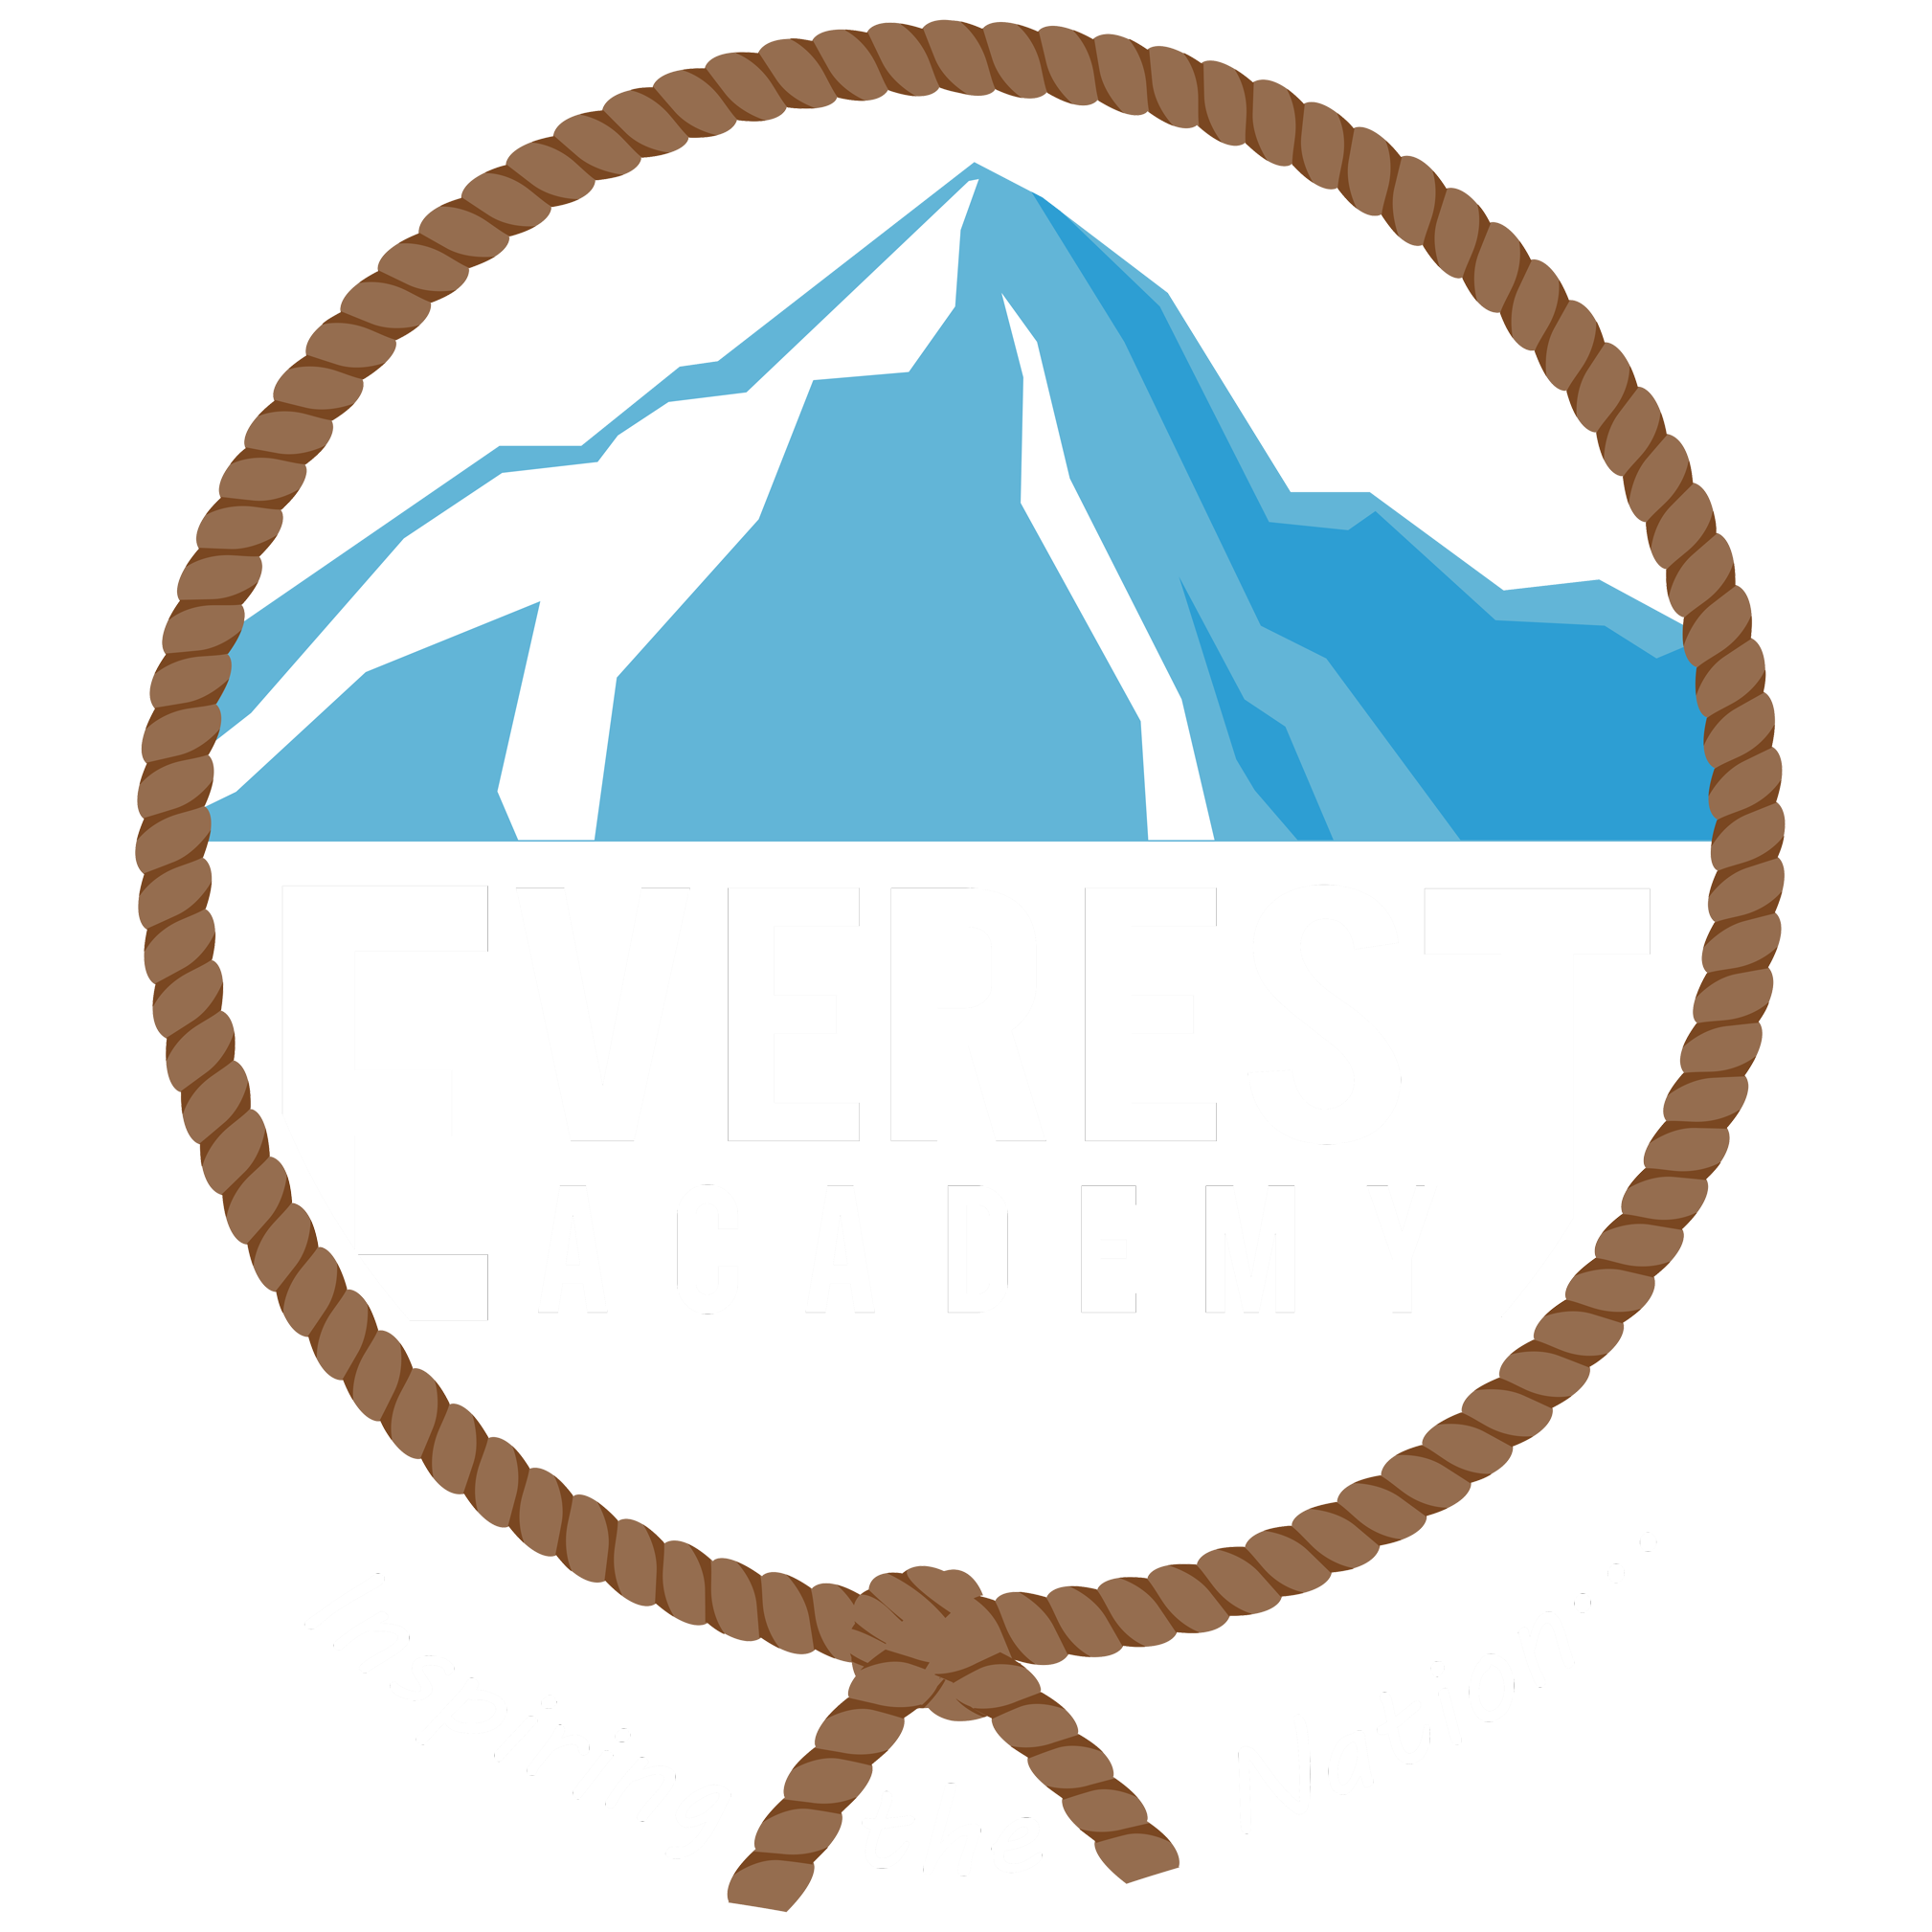 1xbet зеркало рабочее вход на официальный сайт 1хбе - Everest Academy